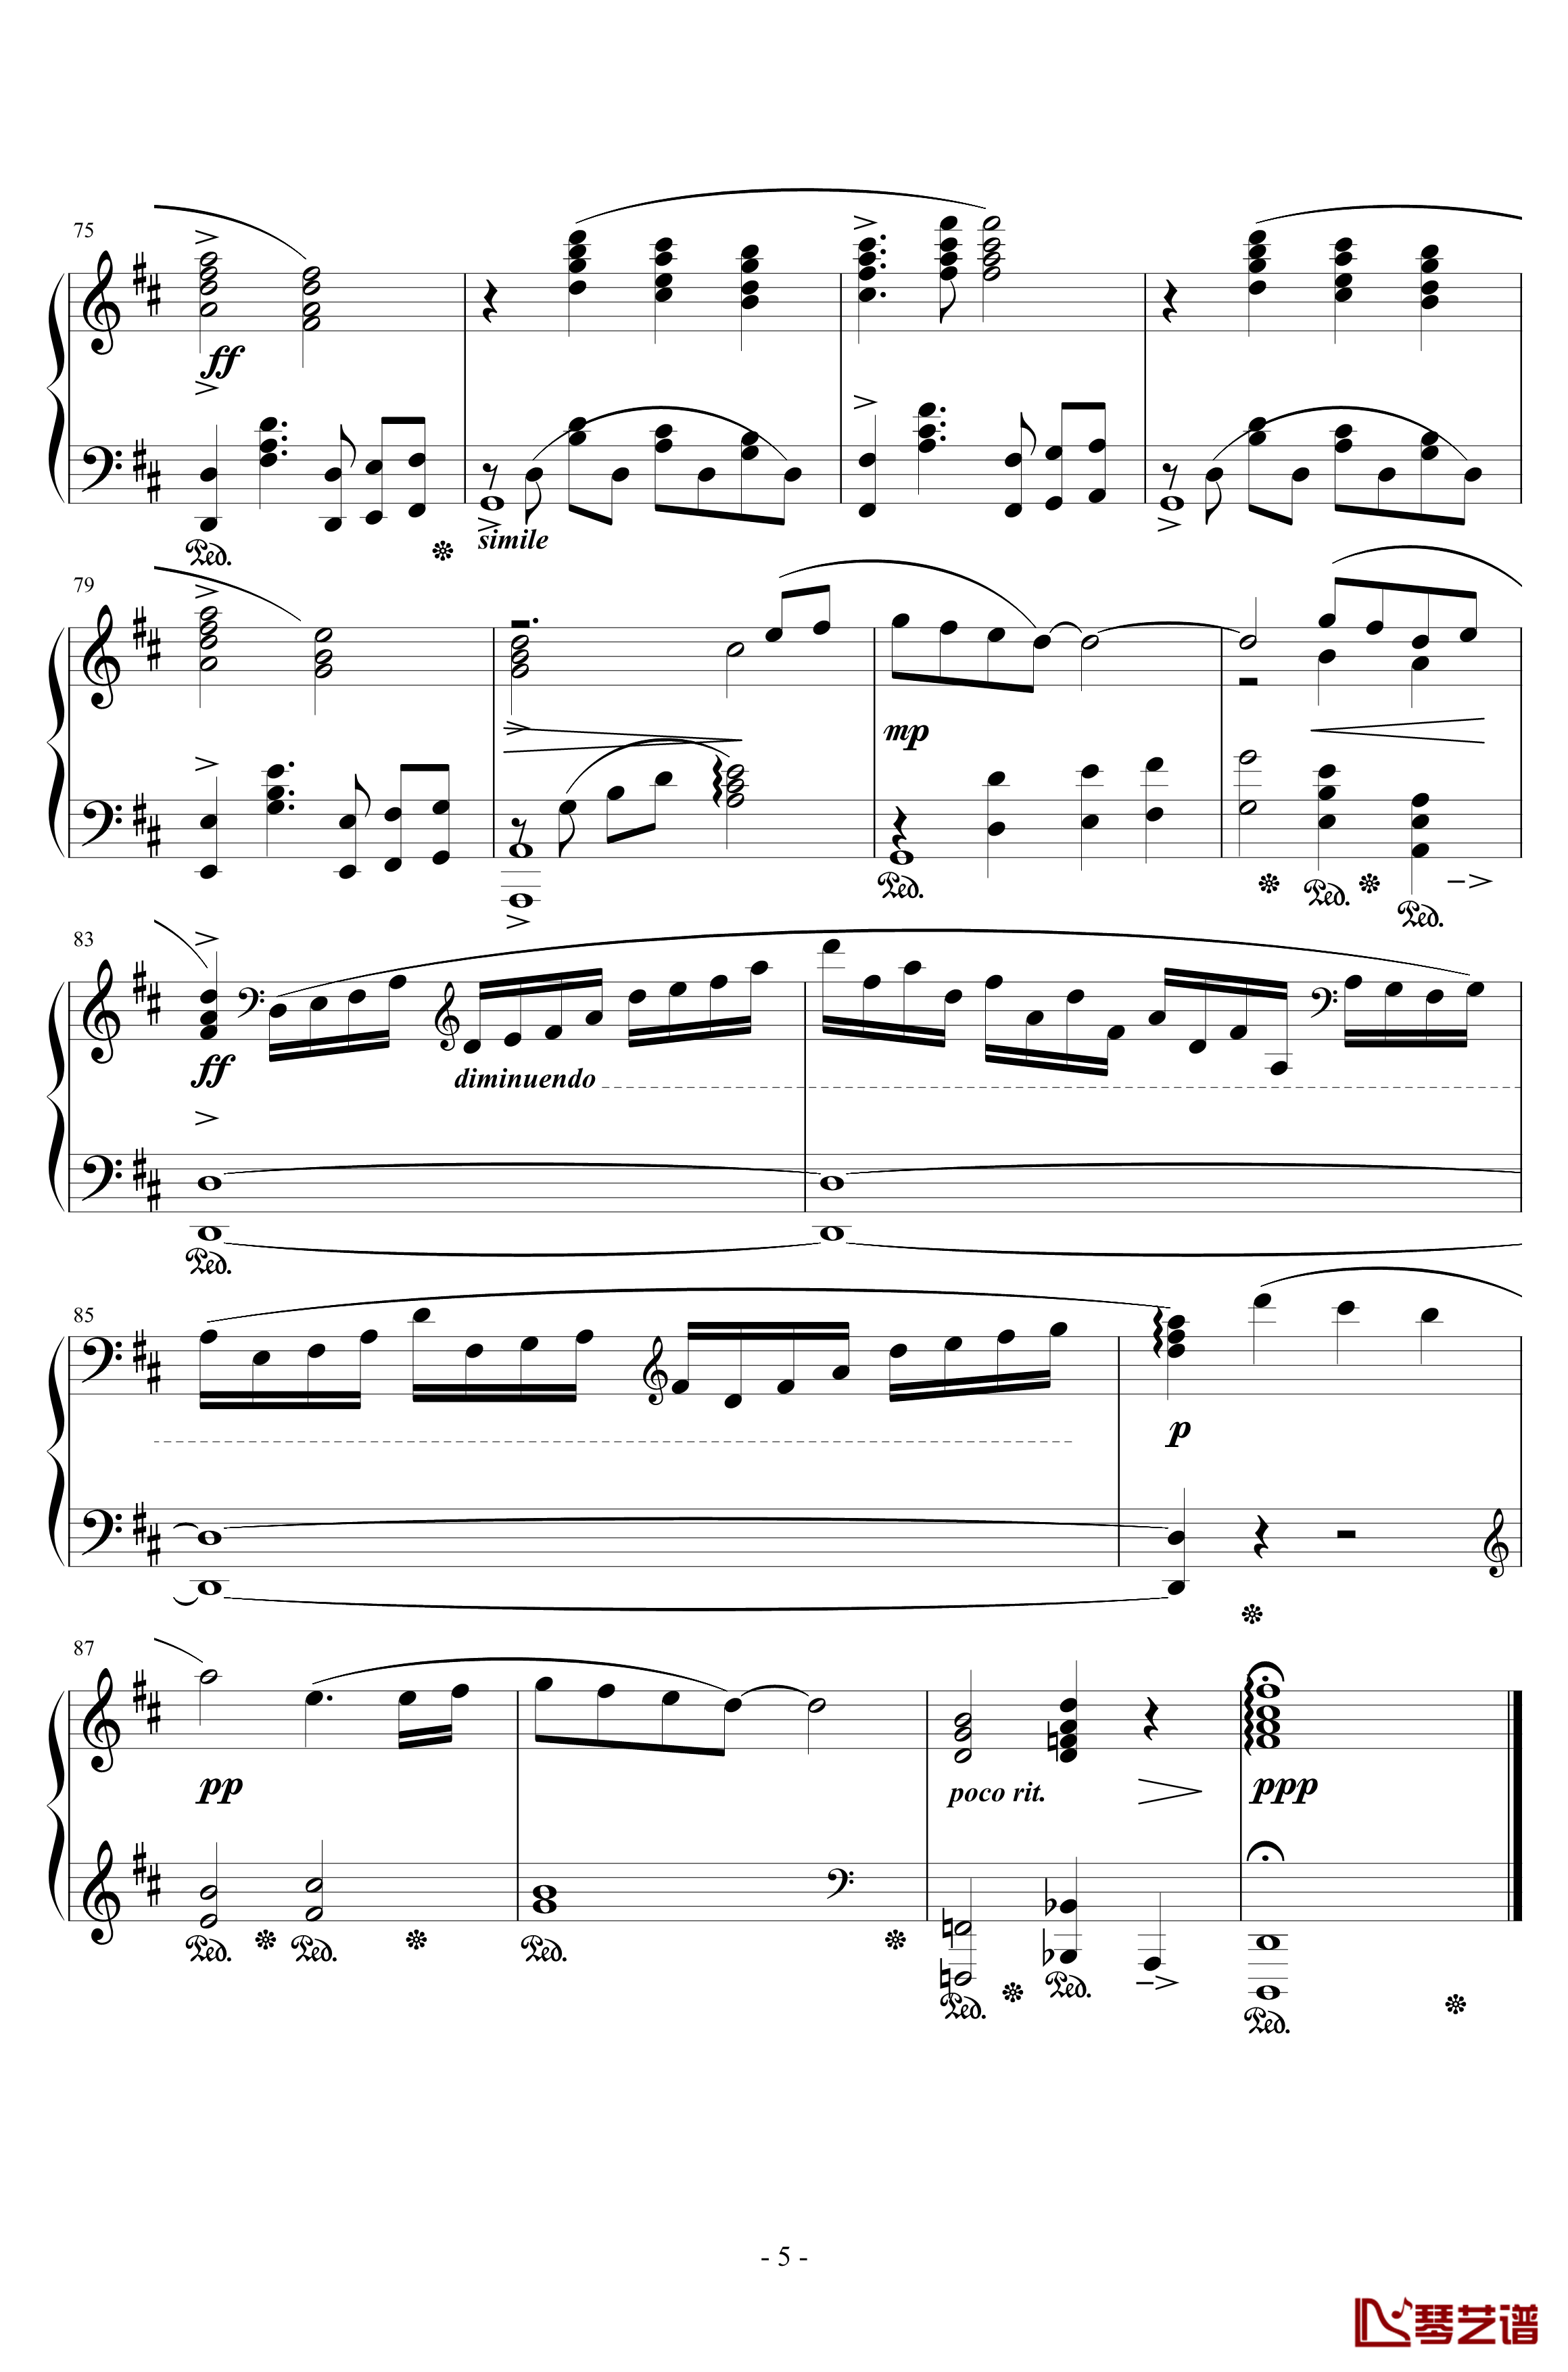 最终幻想7爱丽丝的主题钢琴谱-完整版本-植松伸夫5